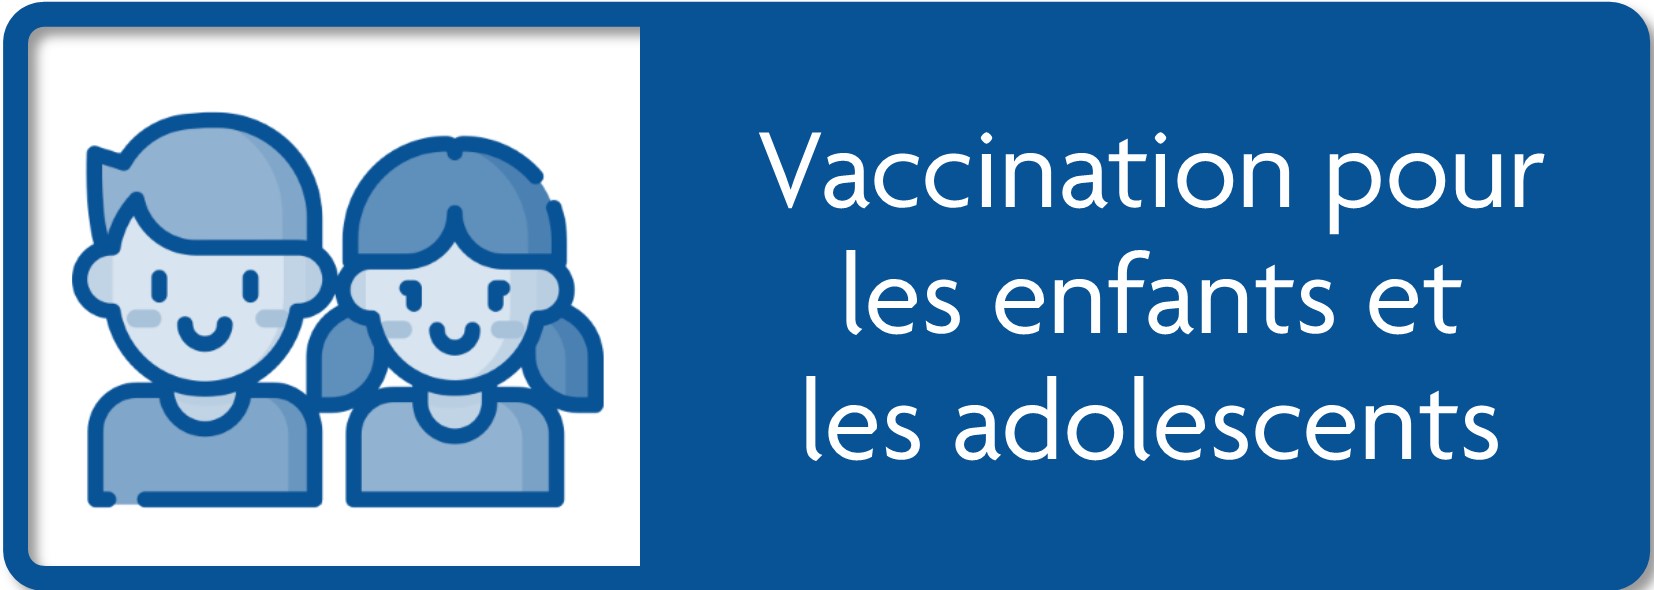 Cliquez pour la vaccination pour les enfants de 5 à 11 ans.